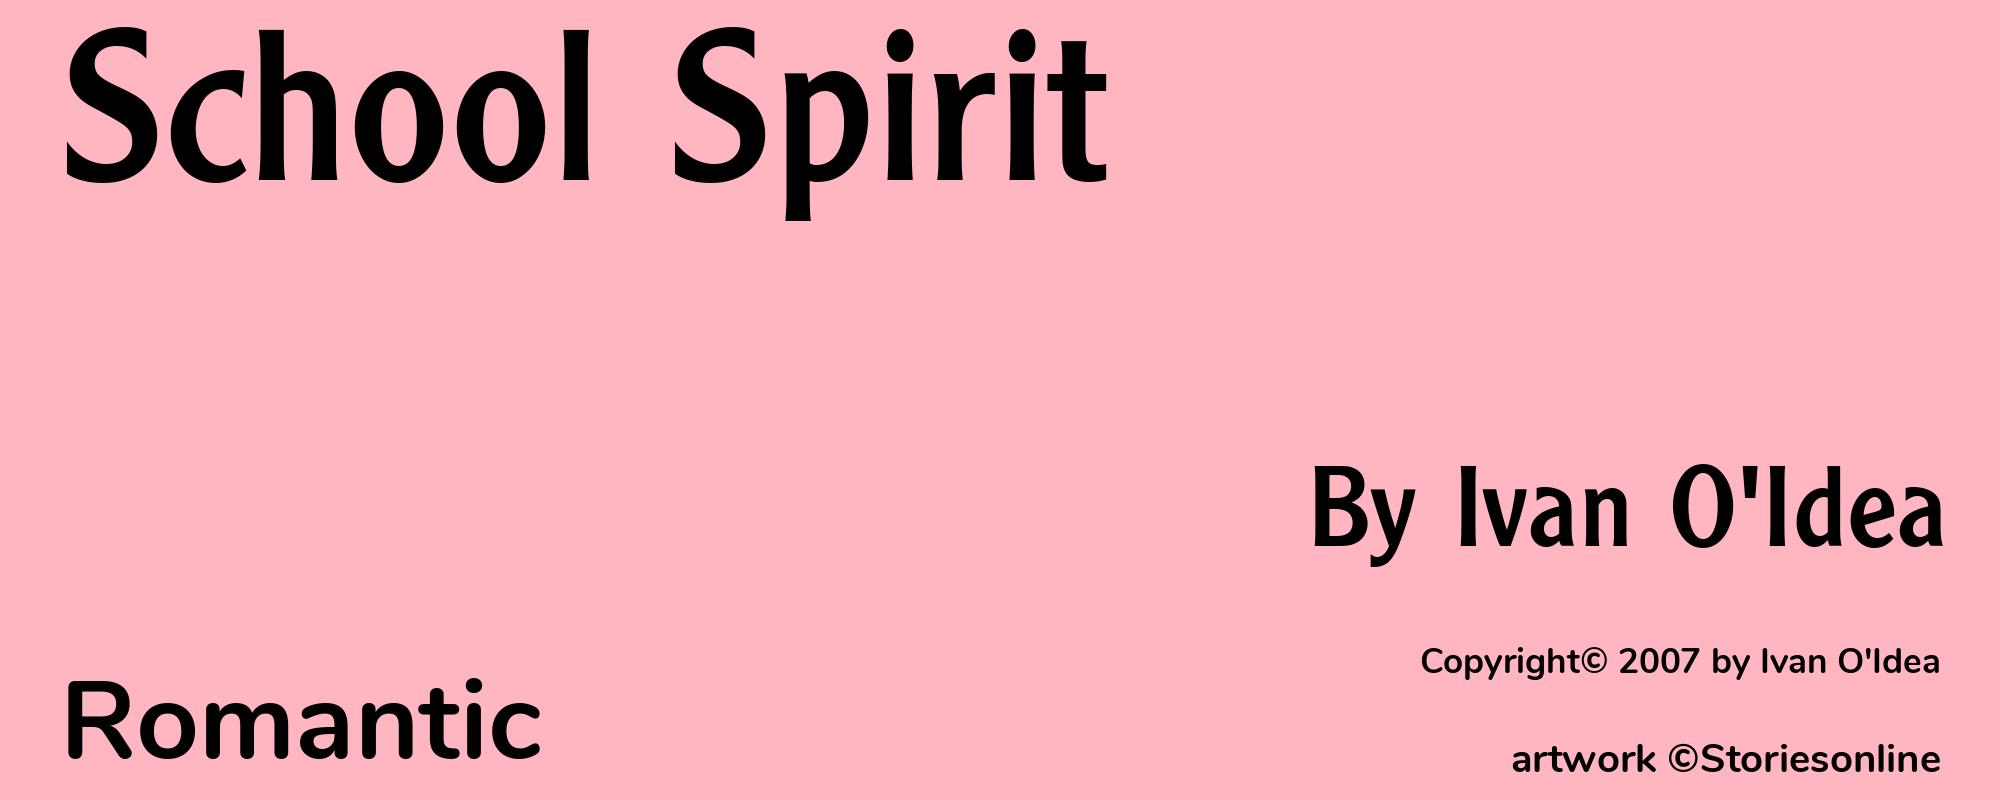 School Spirit - Cover